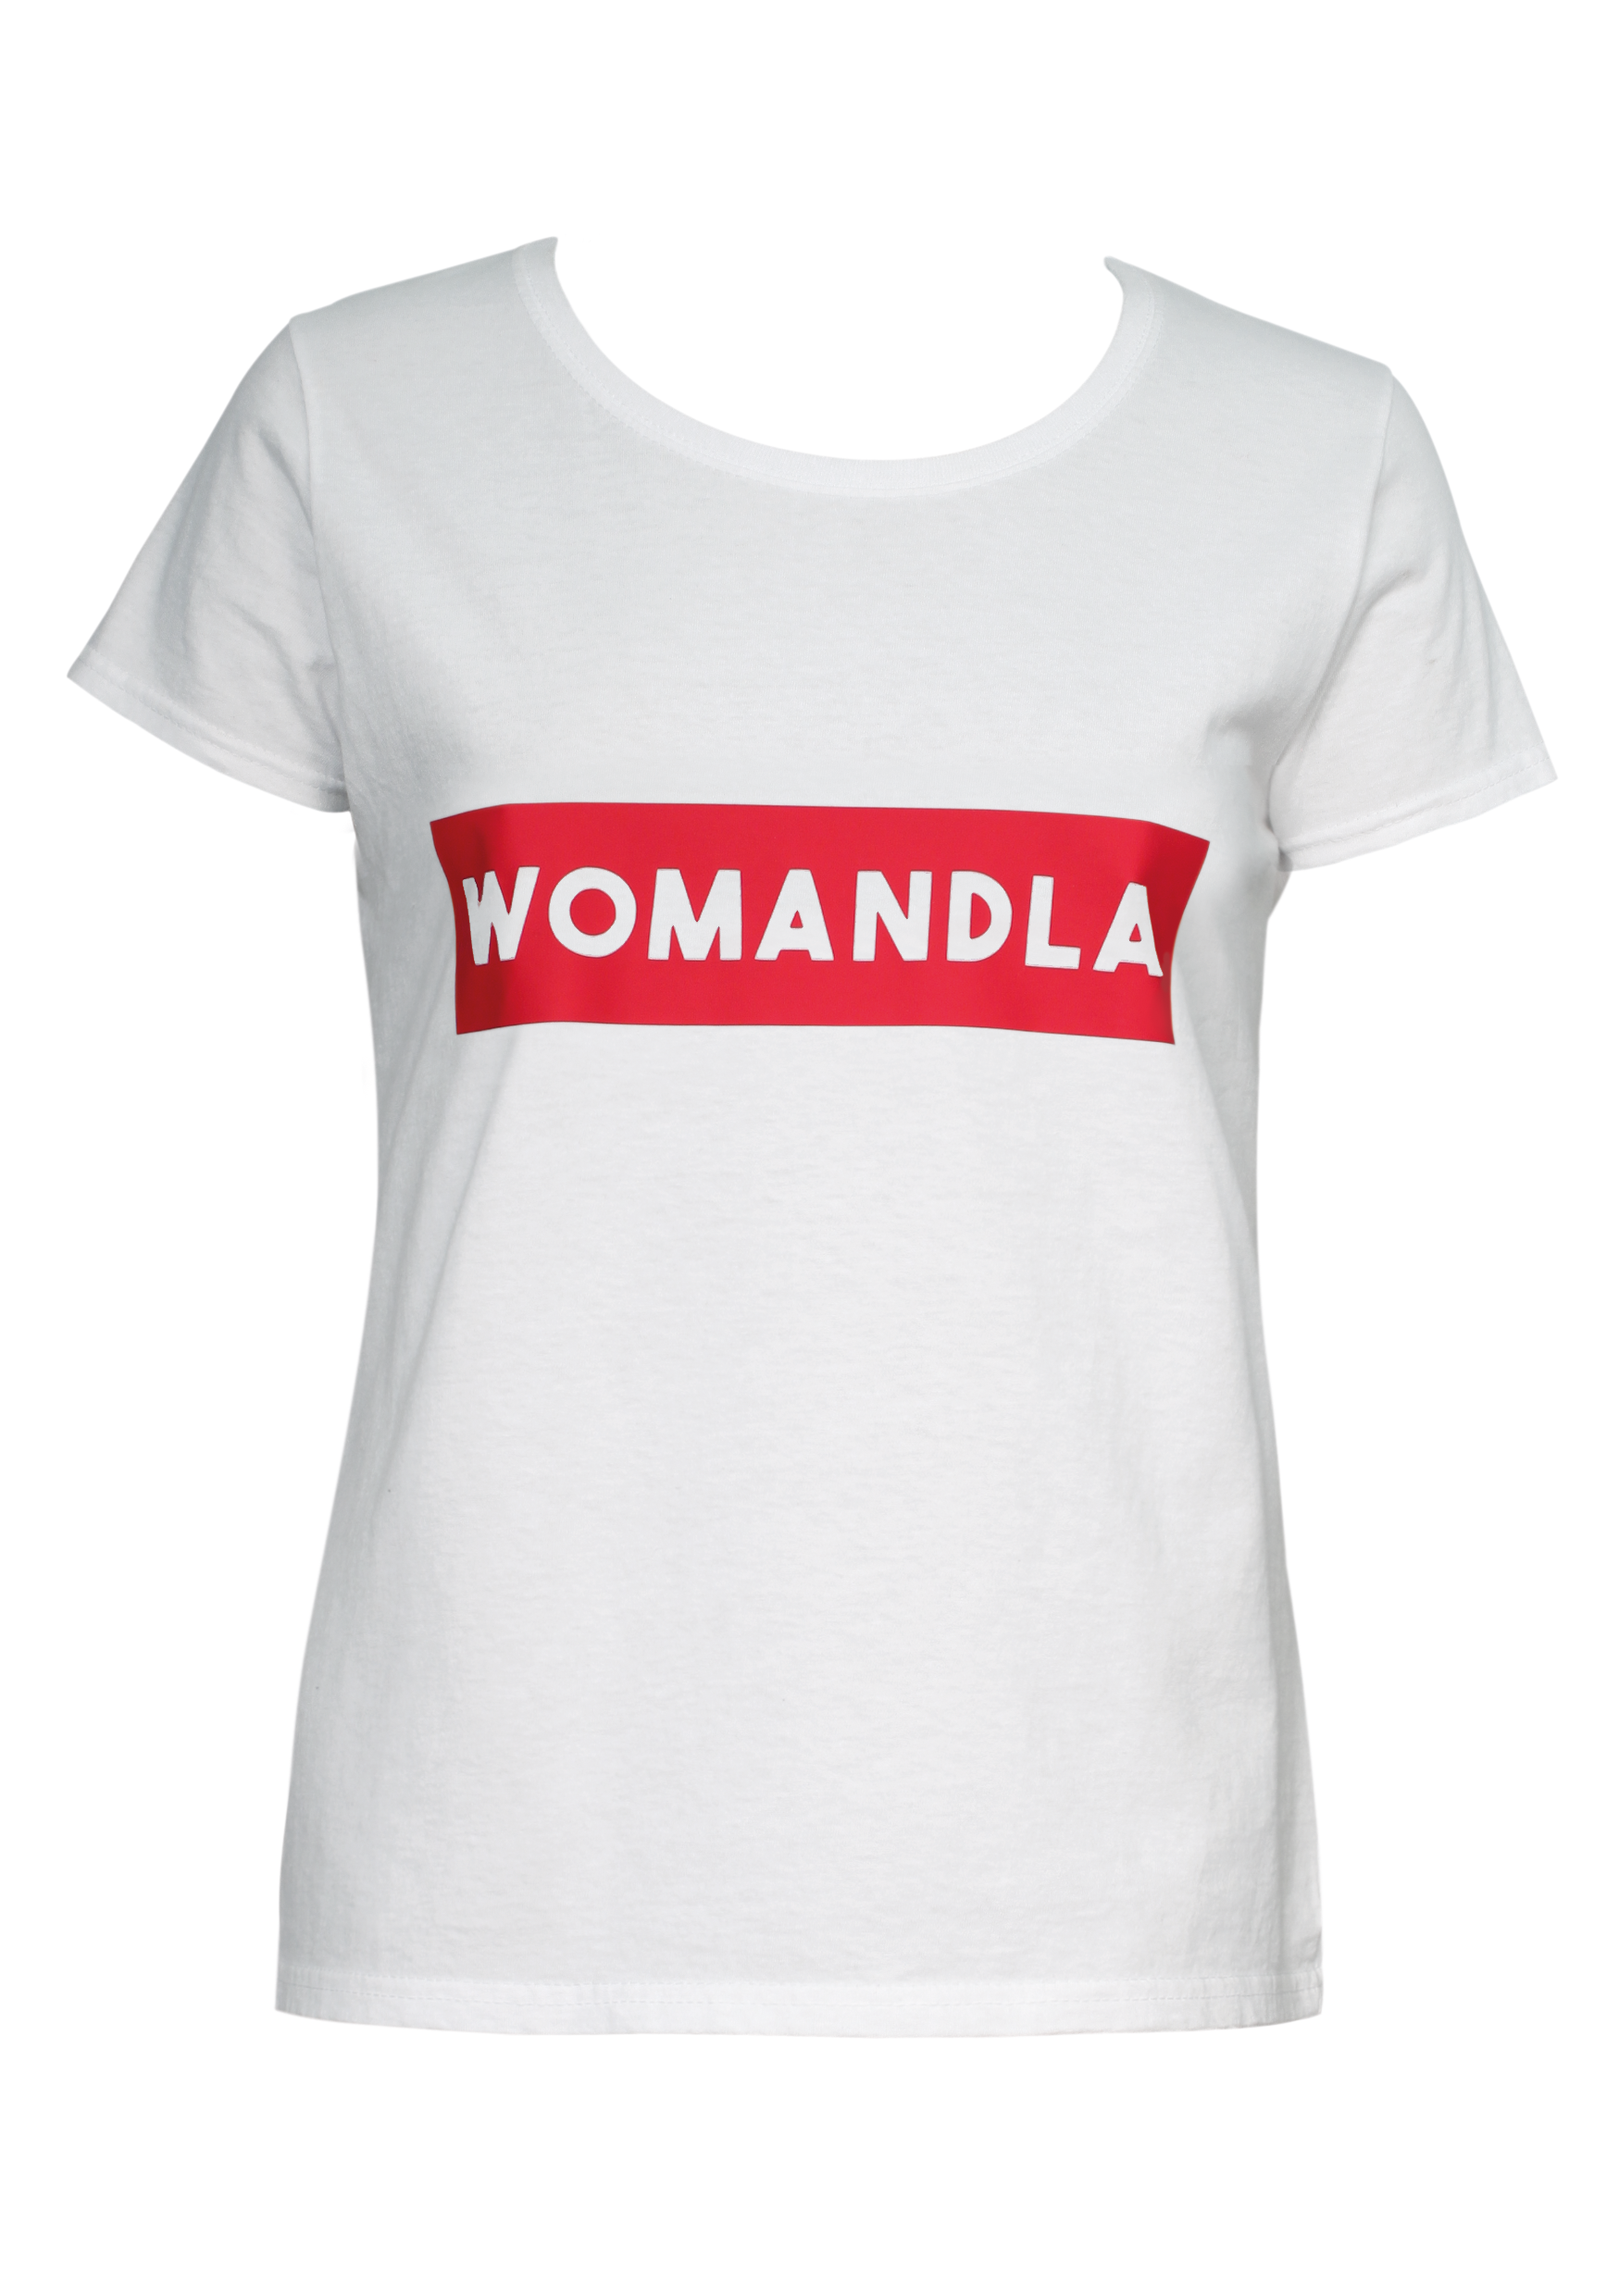 Buy your Womandla! Slogan T-shirt R199, Foschini